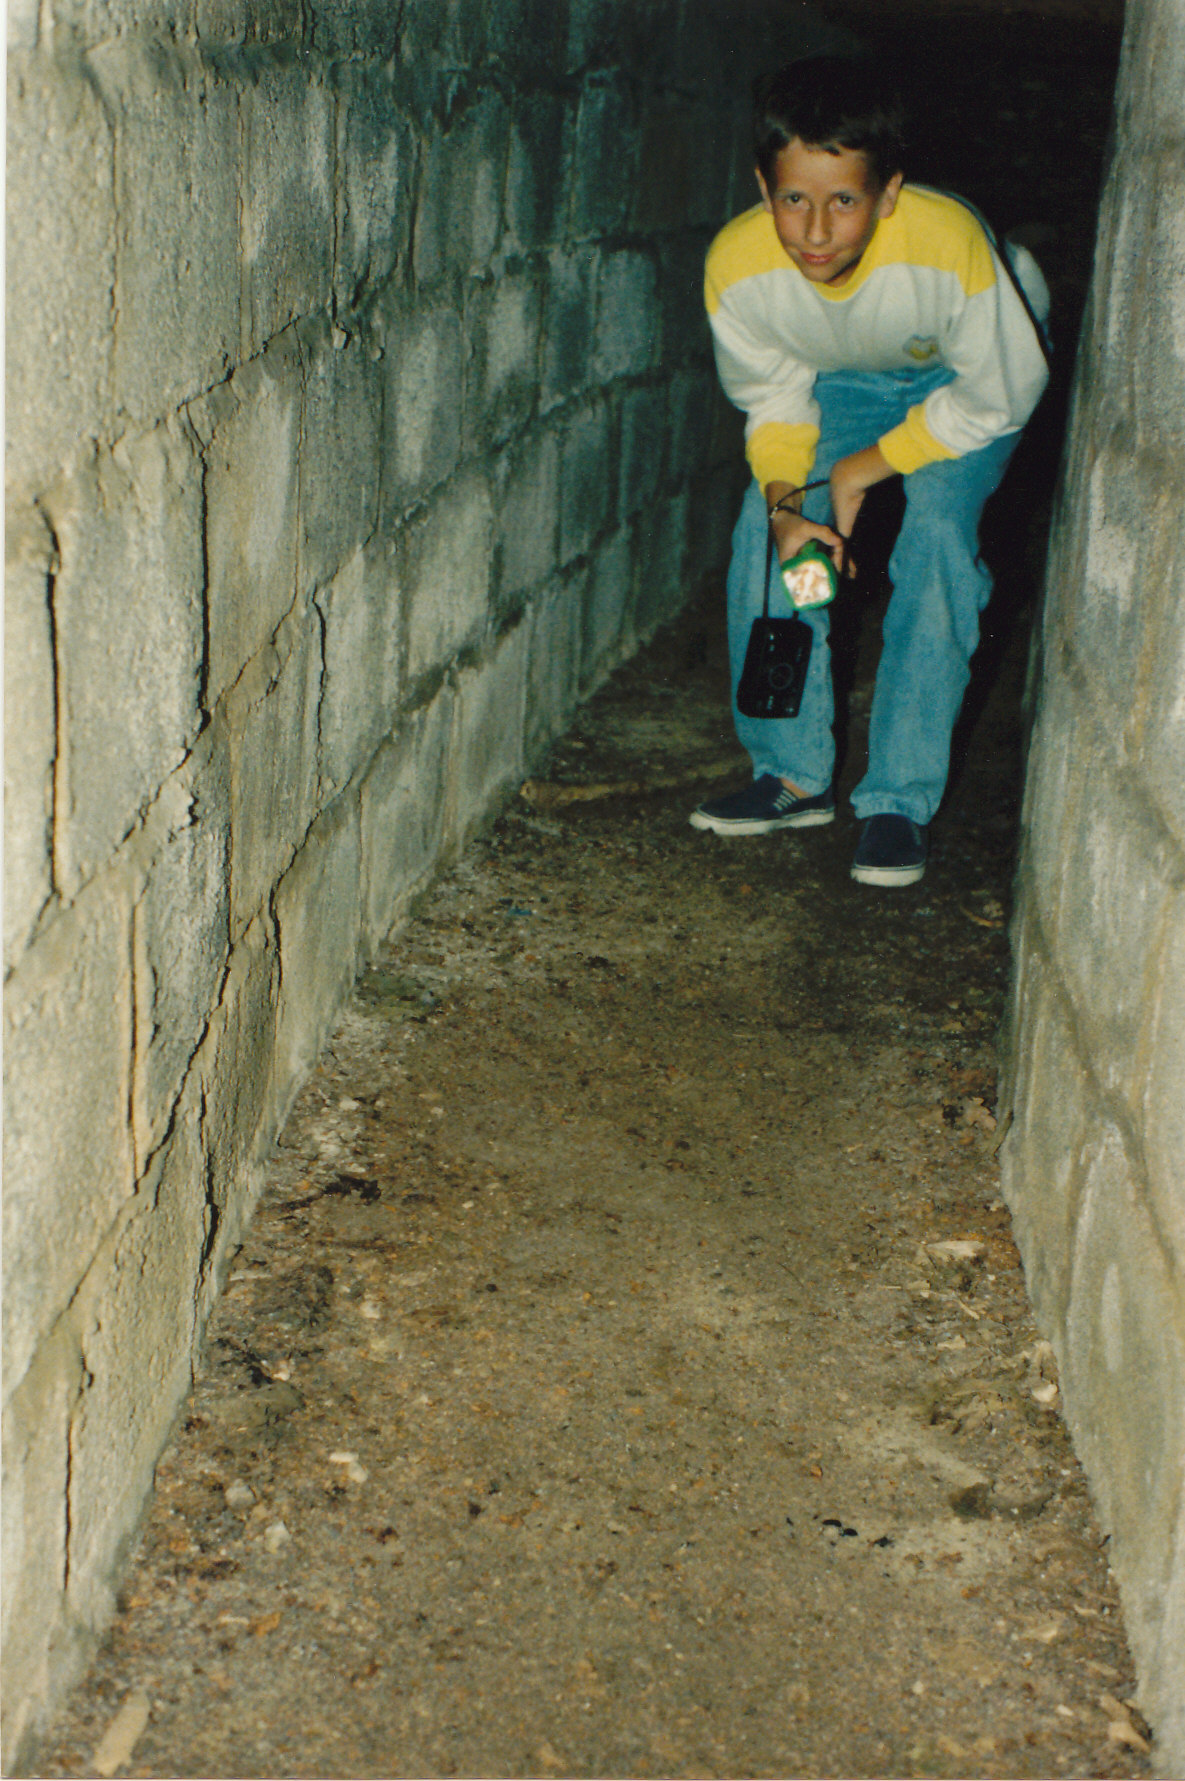 Plympton escape tunnel 1992